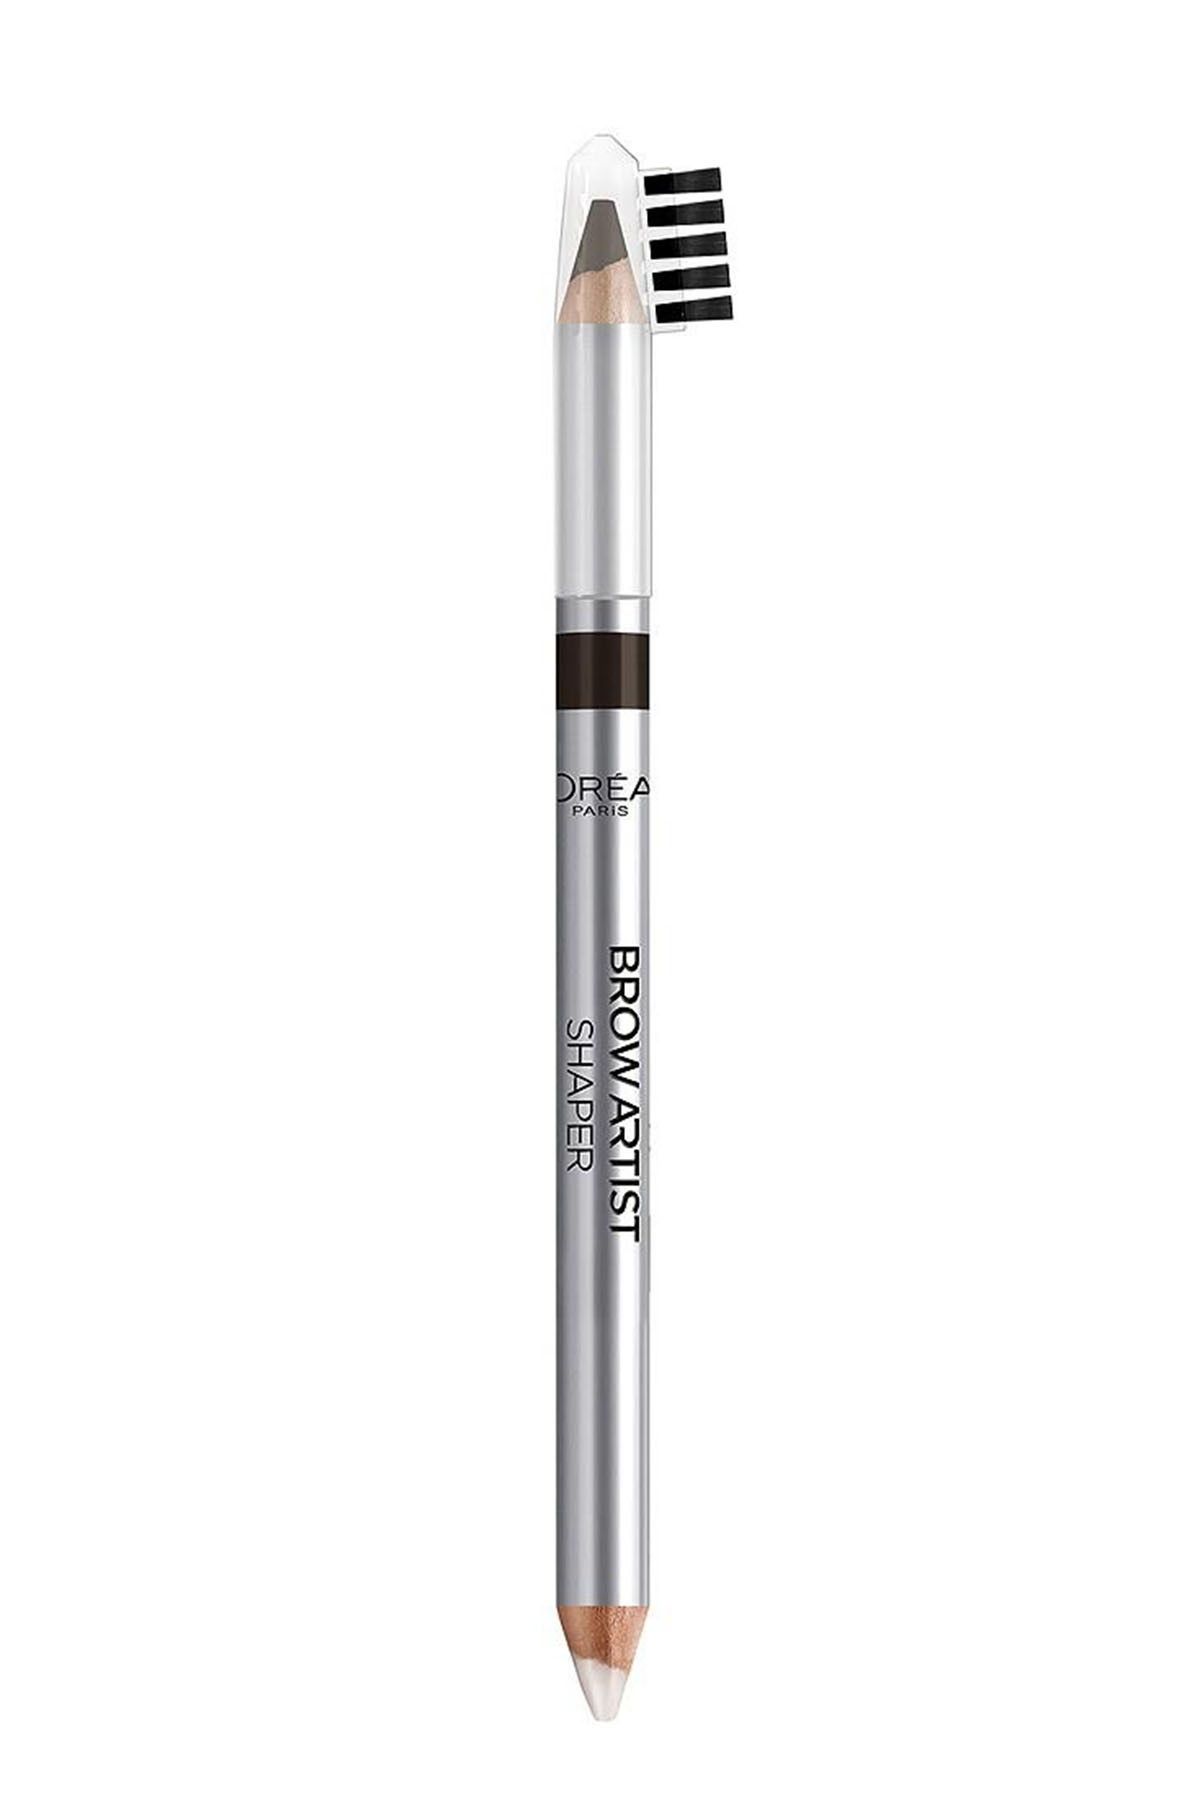 L'Oreal Paris مداد ابرو دو طرفه Brow Artist Shaper رنگ سفید و قهوه ای تیره شماره 04